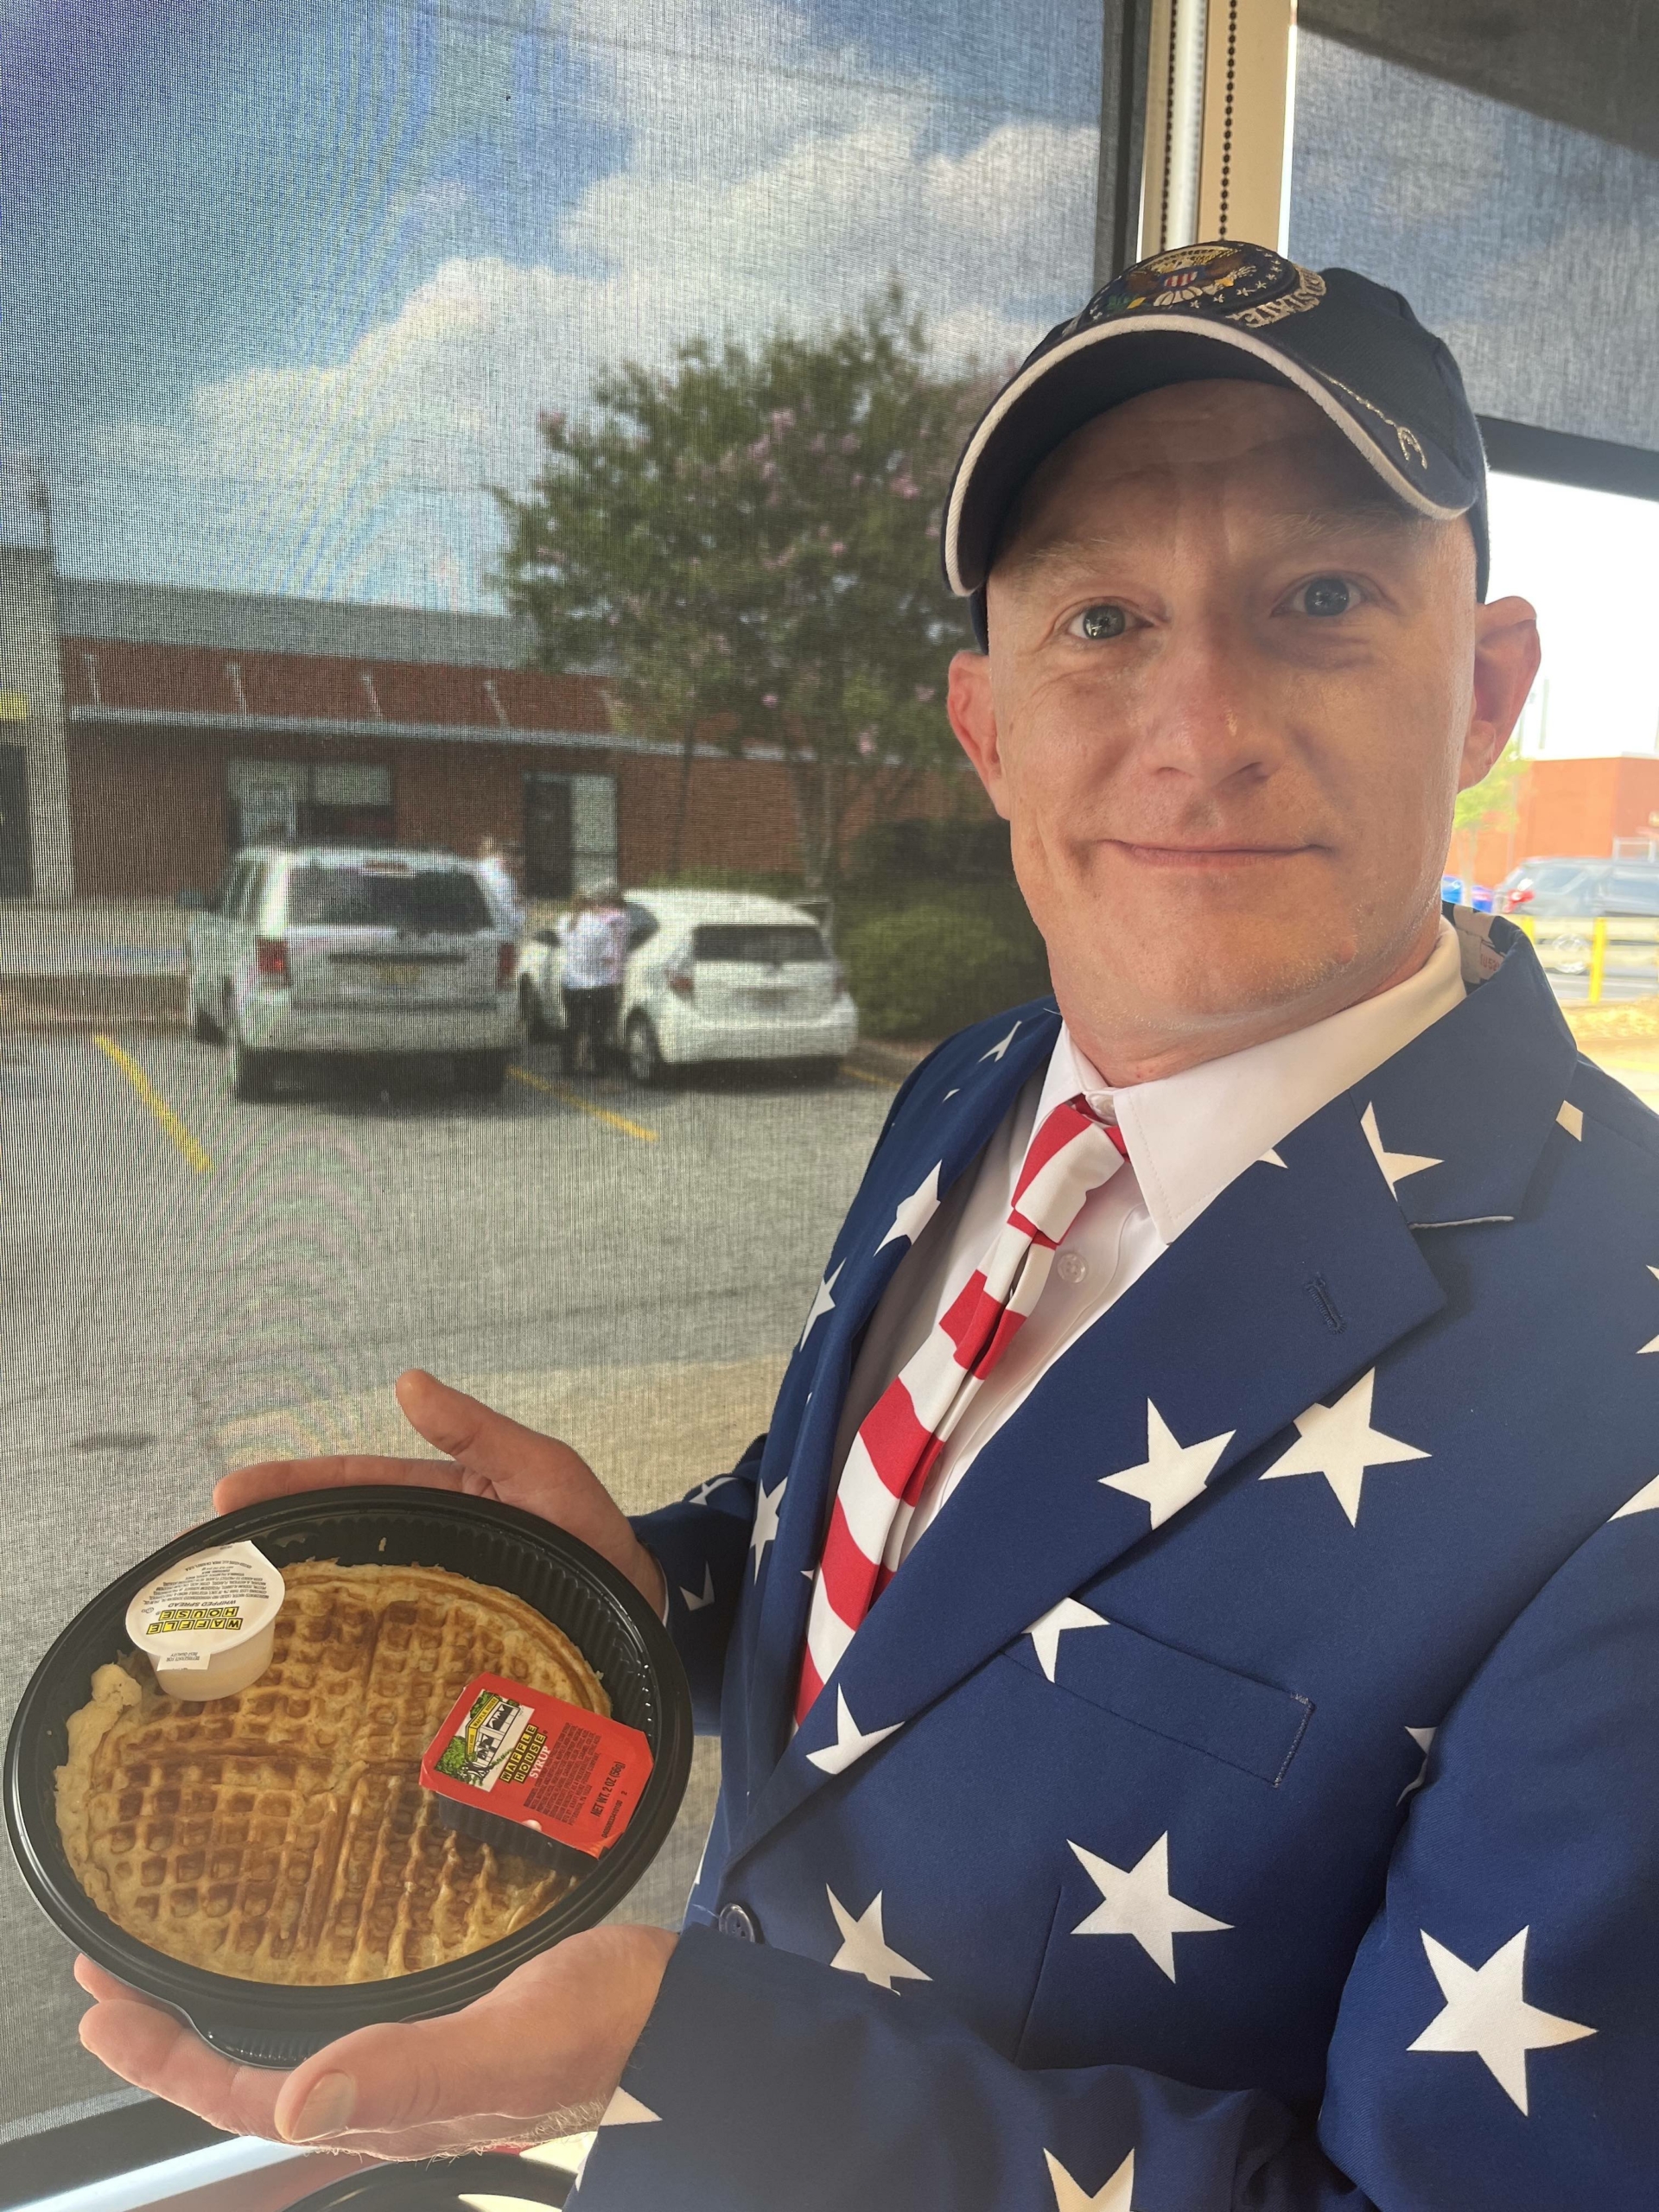 Ông Cliff Rhodes, 45 tuổi, là một trong số những vị khách được cựu Tổng thống Donald Trump chiêu đãi món bánh quế tại Waffle House ở Columbus, Georgia, hôm 10/06/2023. (Ảnh: Được đăng dưới sự cho phép của của ông Cliff Rhodes)